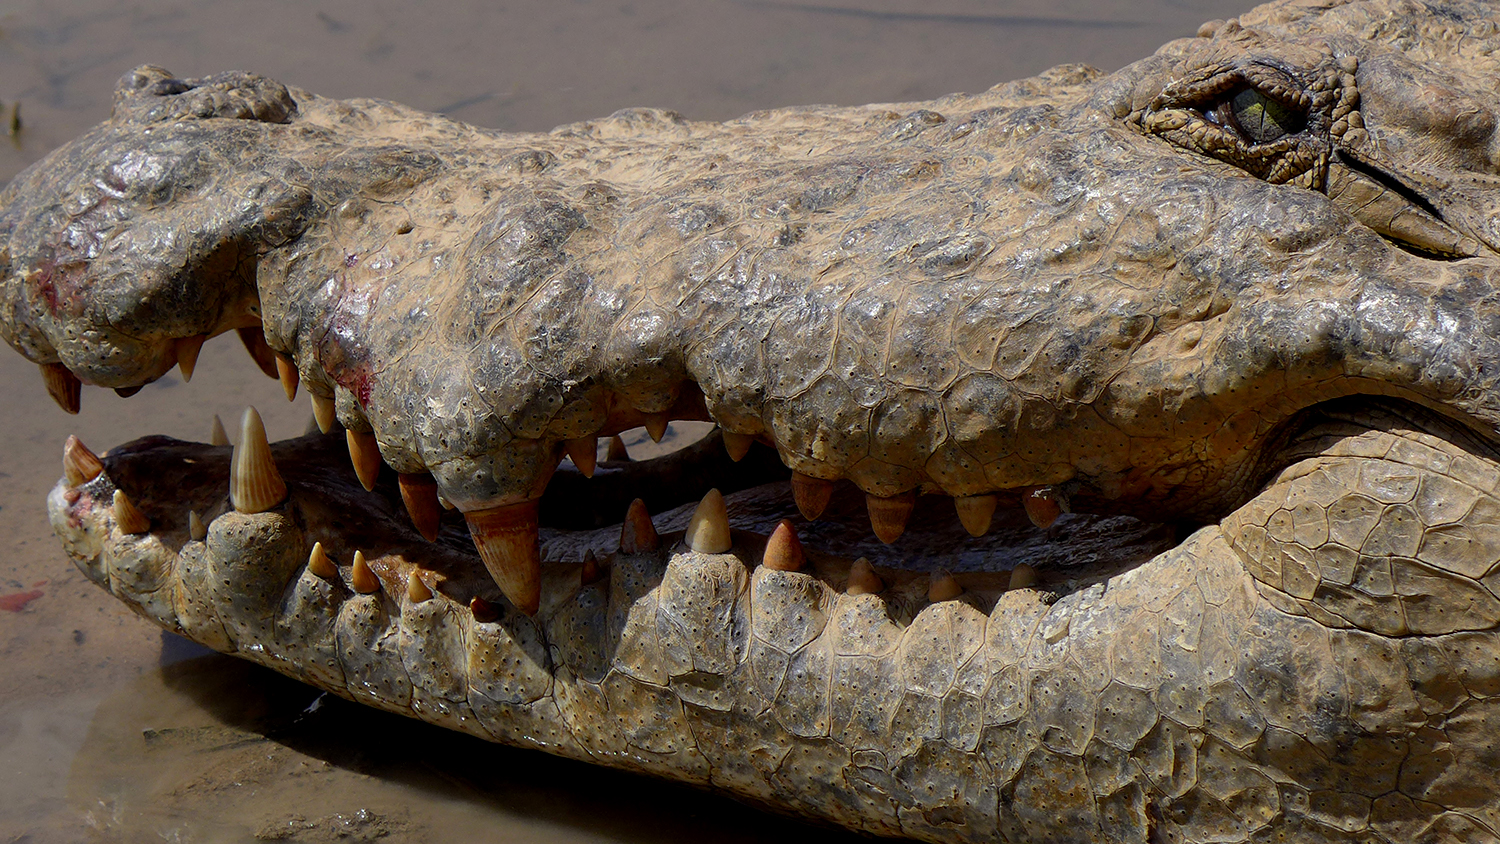 Quand on s’approche très près des crocodiles, ils ouvrent les yeux et un peu la bouche pour signaler qu’ils ont repéré notre présence. 